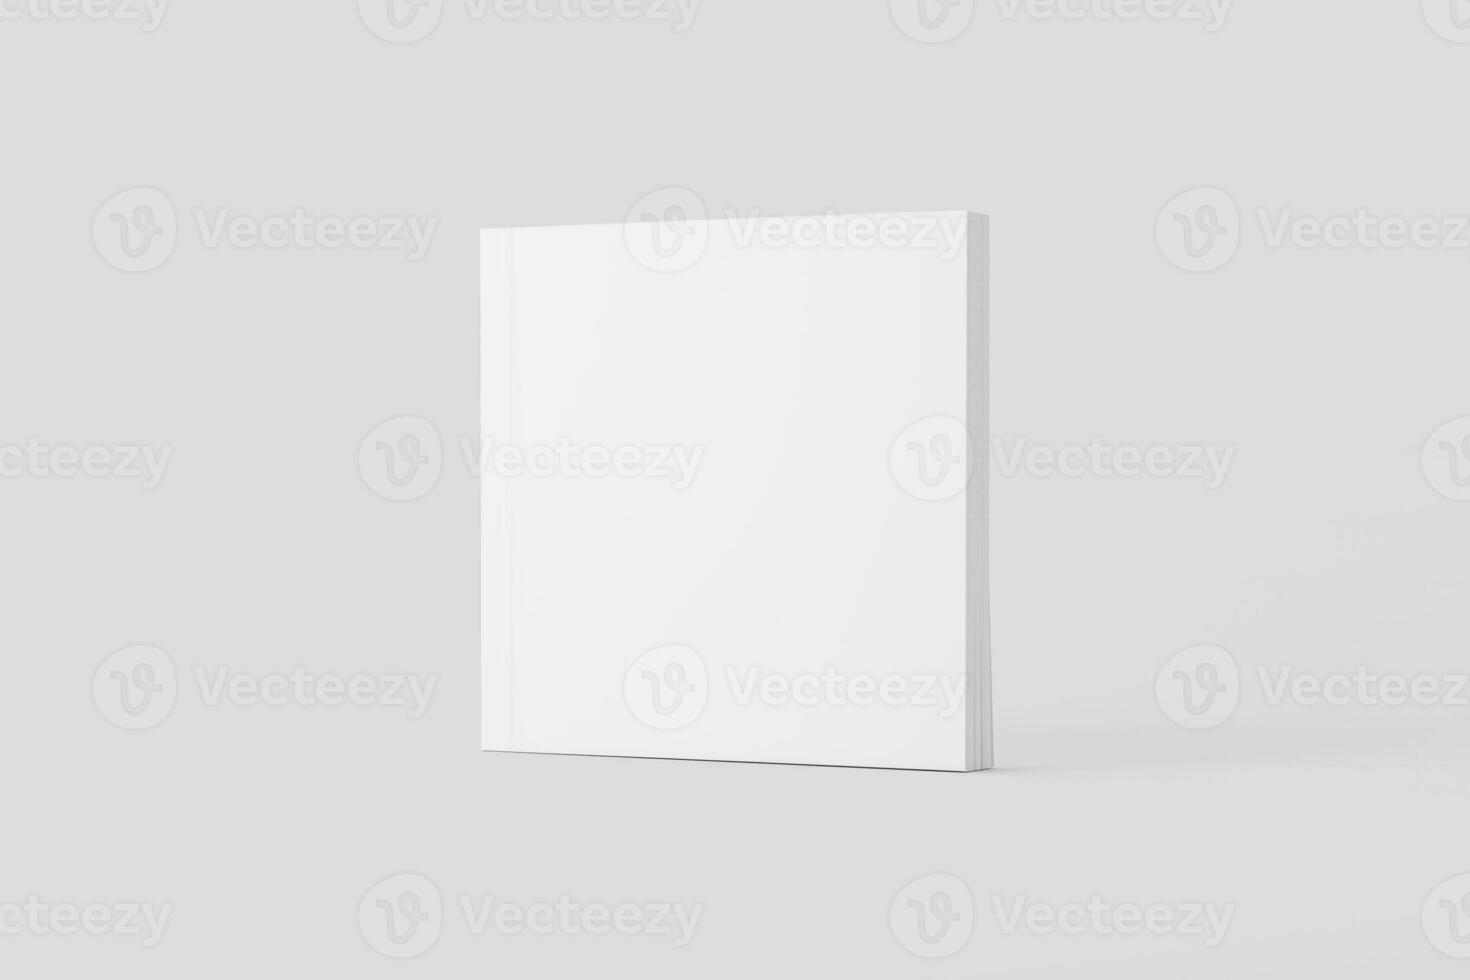 carré couverture souple livre blanc Vide 3d le rendu maquette photo